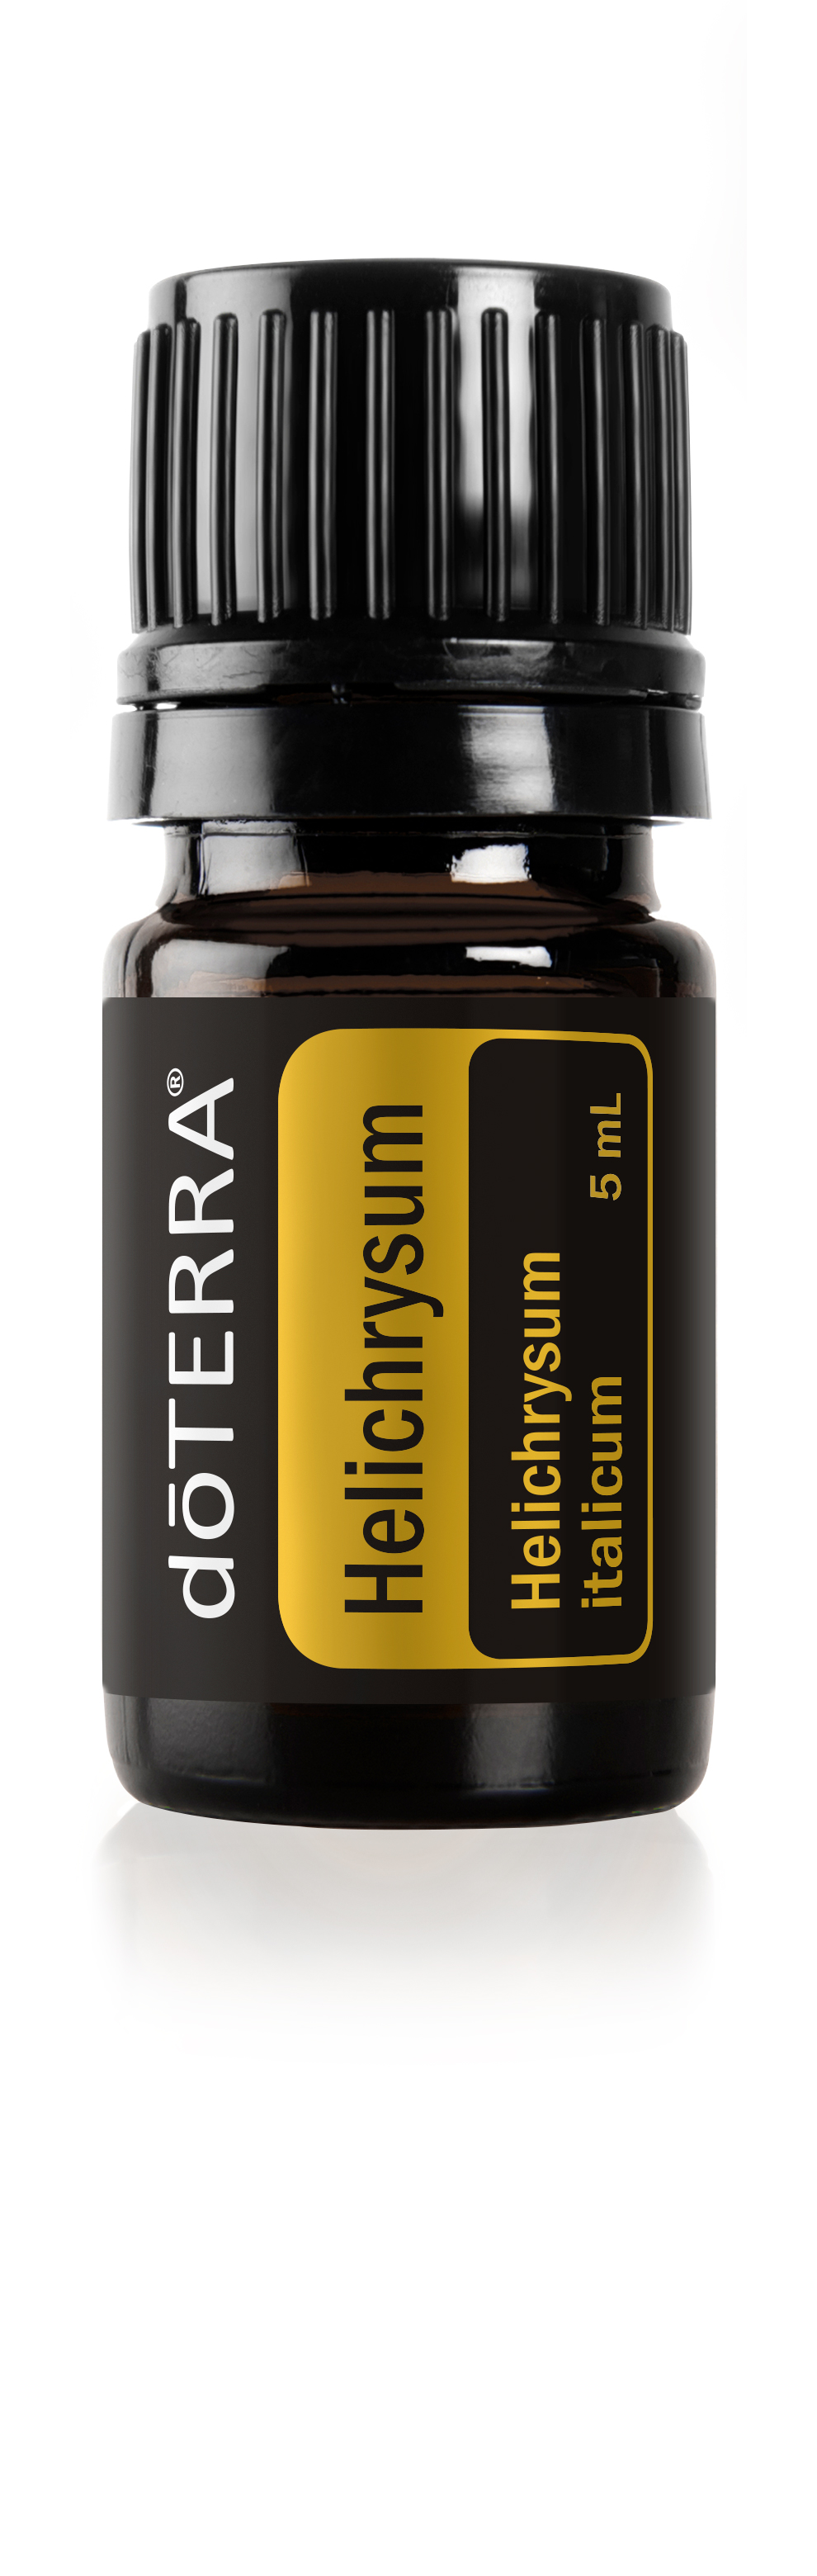 Helichrysum Oil | dōTERRA Essential Oils